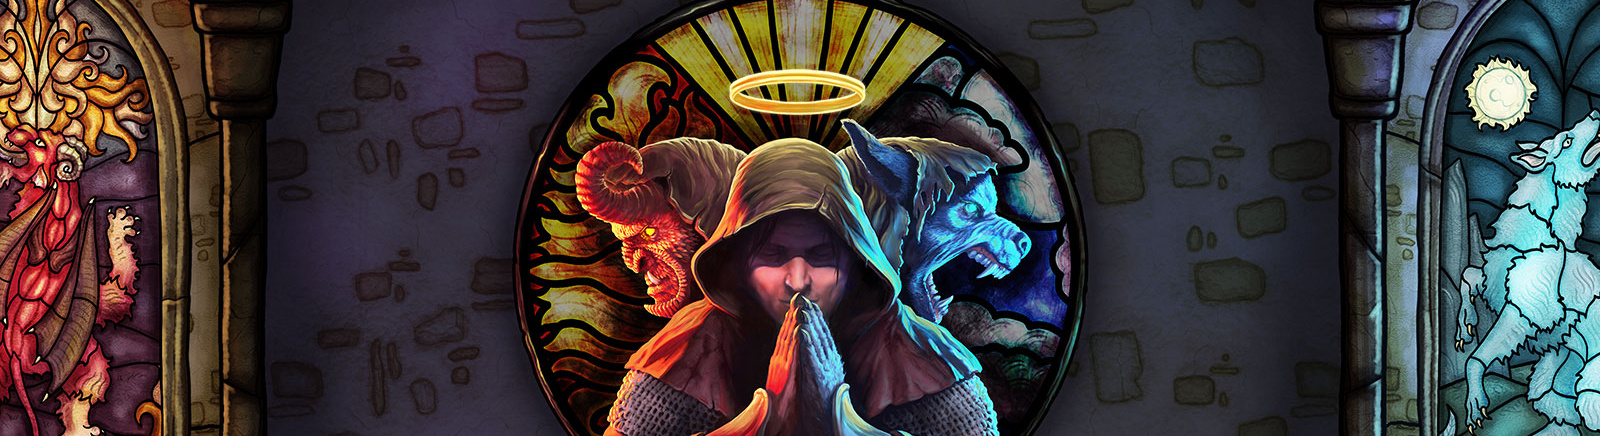 Дата выхода Saga Of Sins  на PC, PS5 и Xbox Series X/S в России и во всем мире